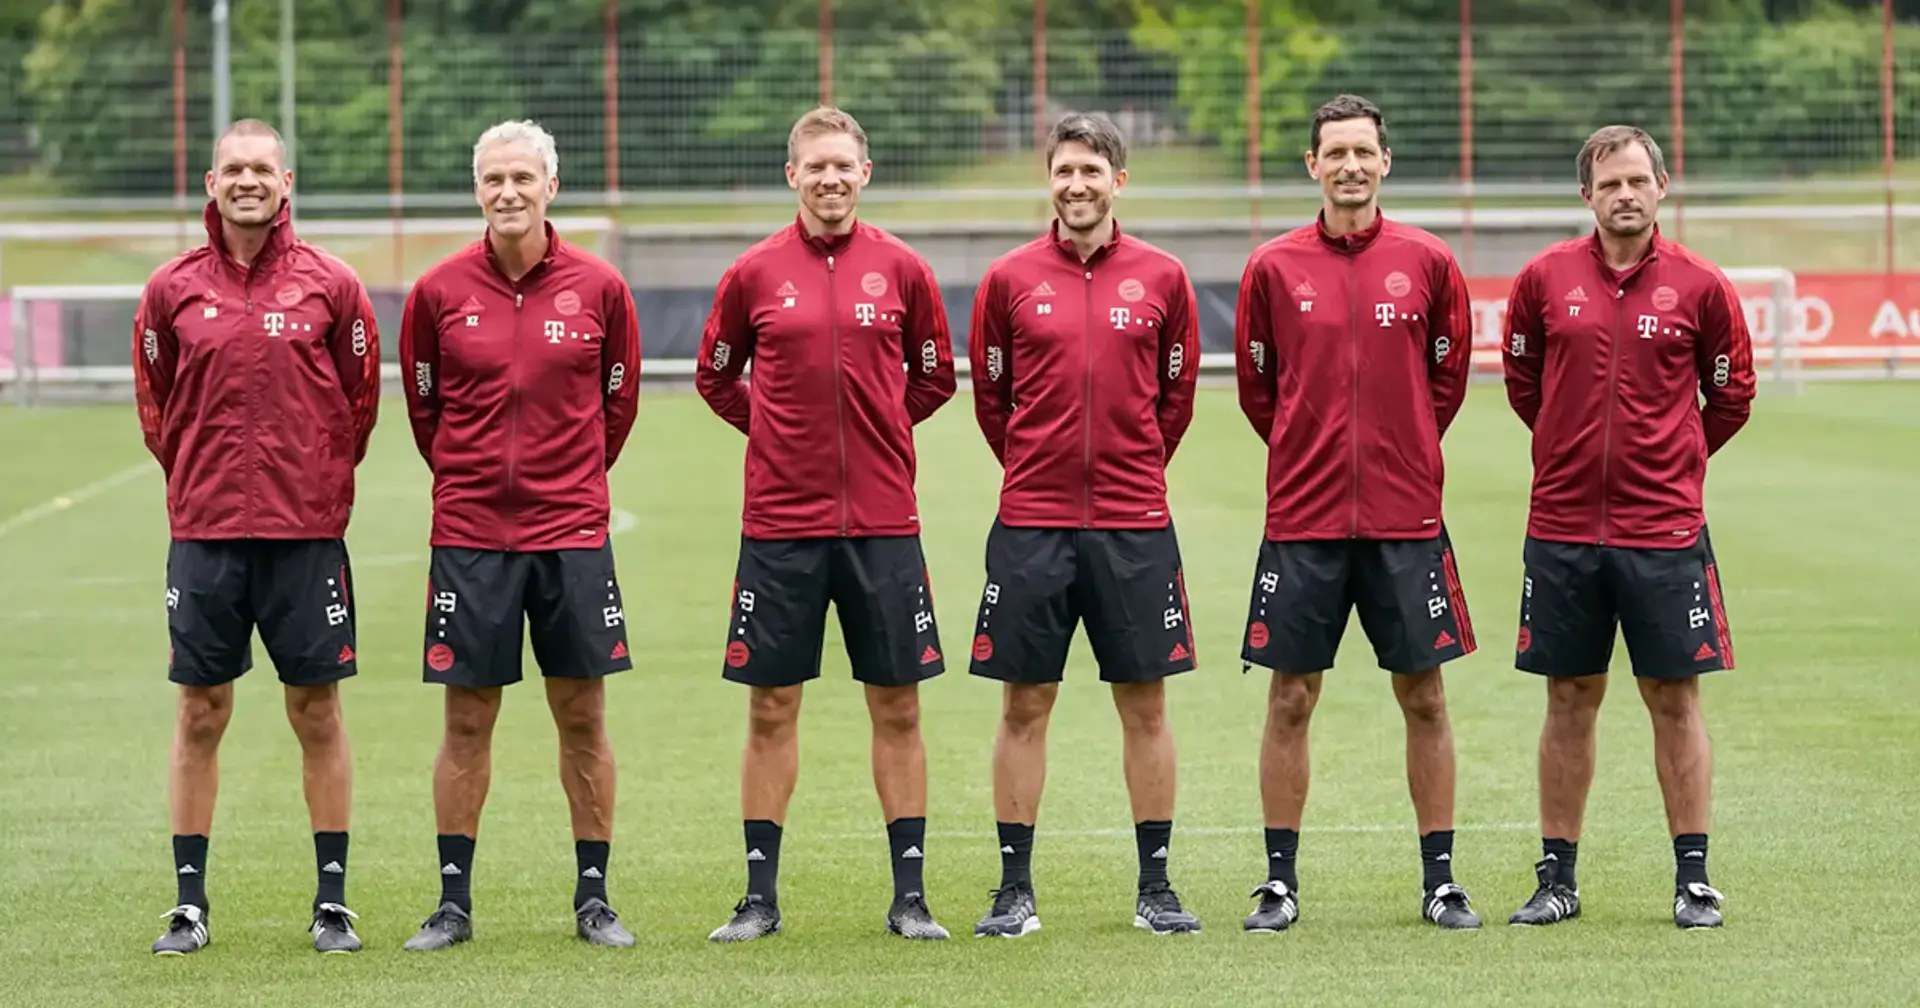 Glück, Zembrod, Toppmöller: Bayern stellt den neuen Trainerstab offiziell vor